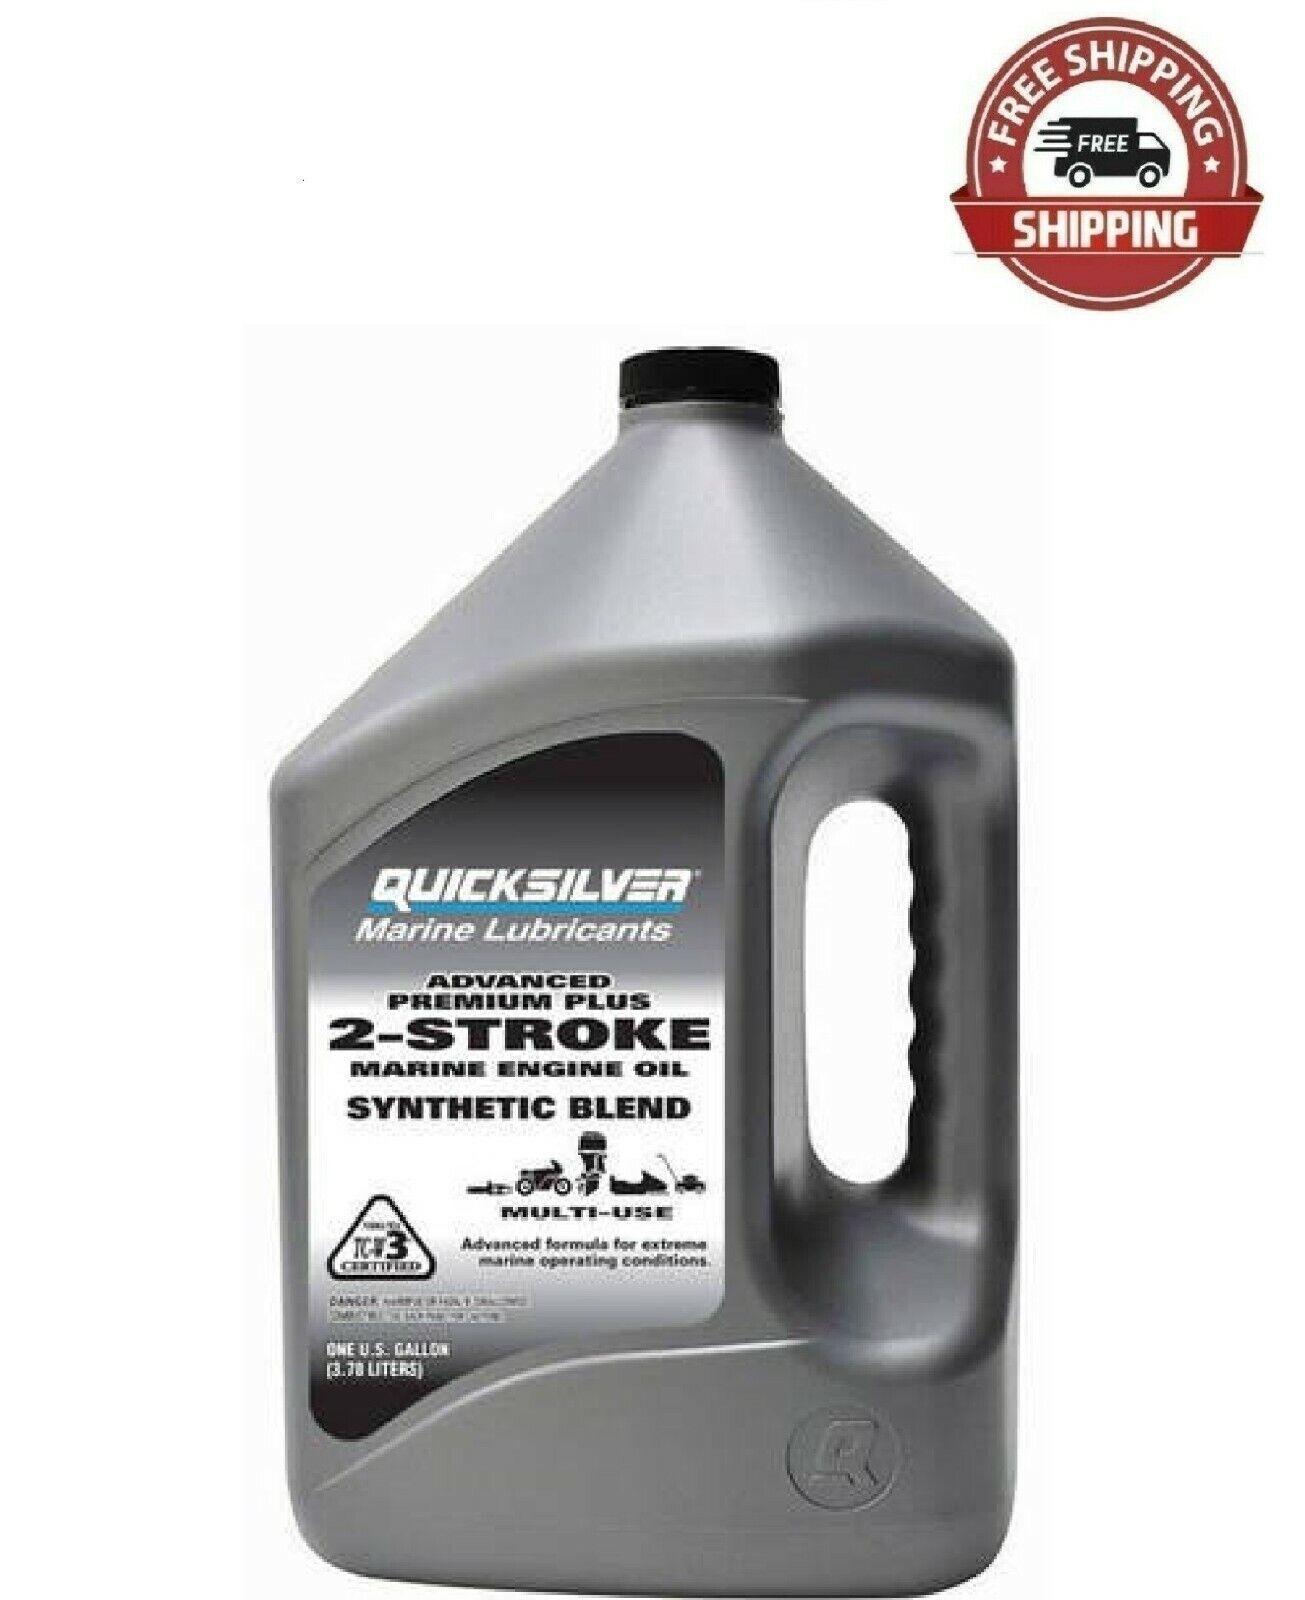 Quicksilver Premium plus 2-Stroke Synthetic Blend Marine Oil - 1 Gallon, New,